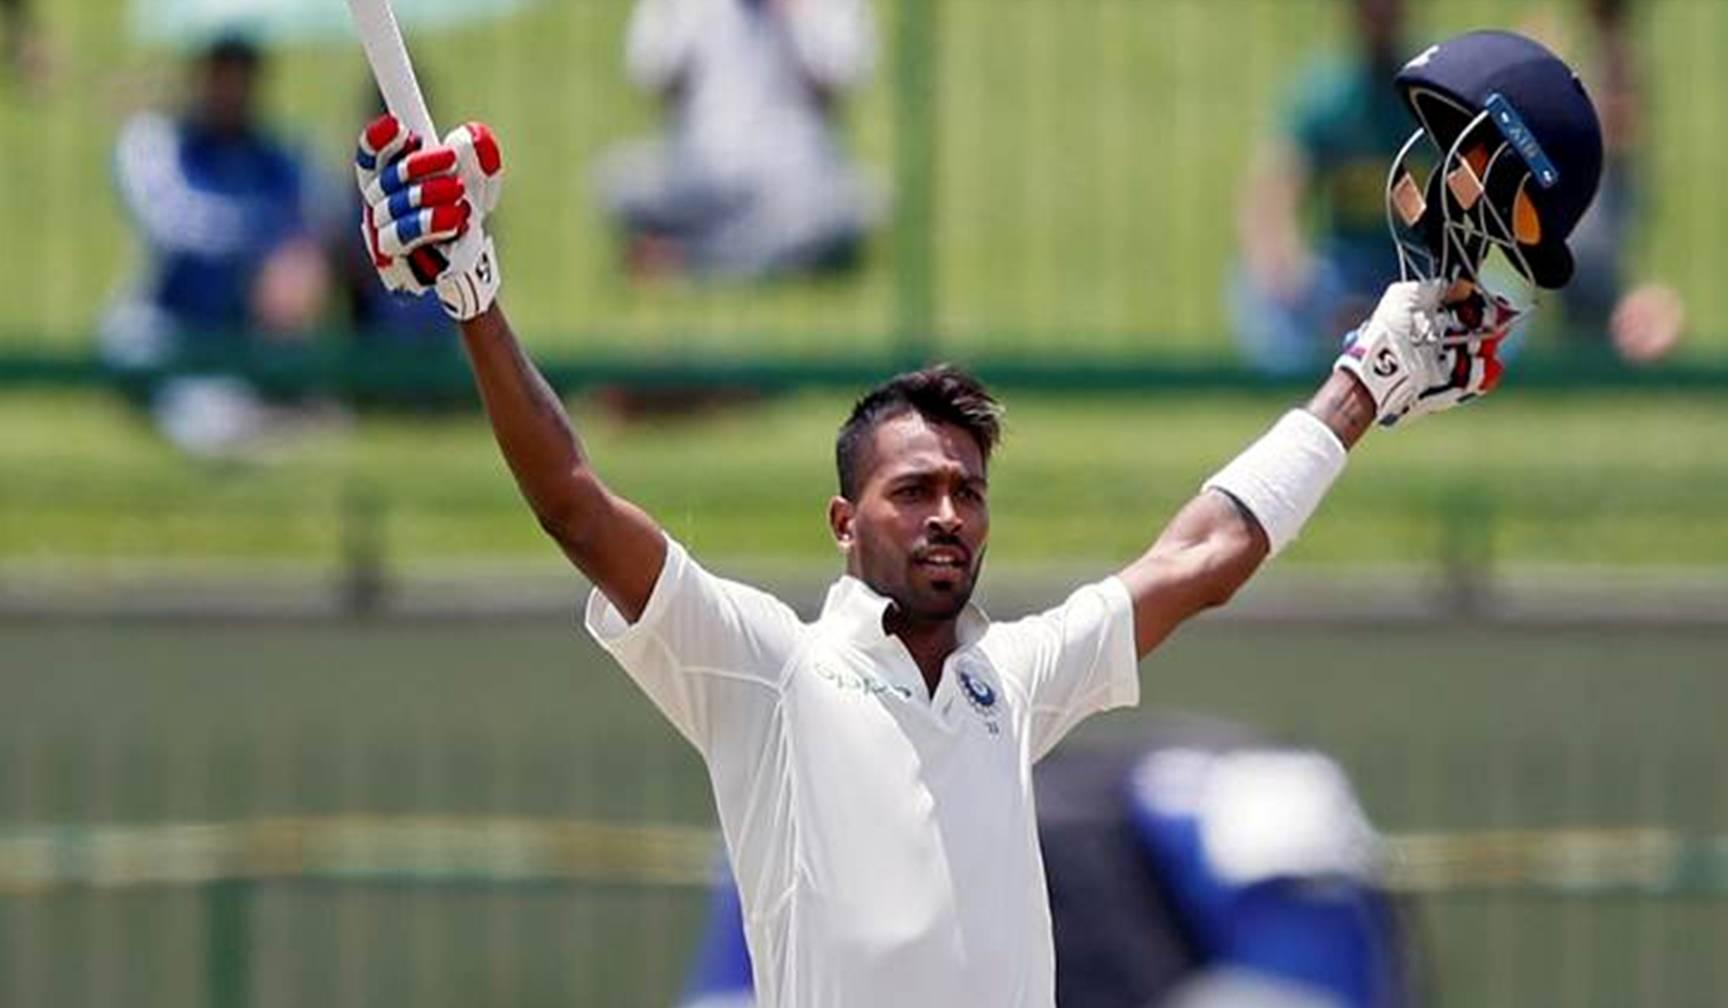 तीसरा टेस्ट मैच : पांड्या ने ठोका करियर का पहला शतक और इन दो दिग्गजों के तोड़ दिए रिकॉर्ड